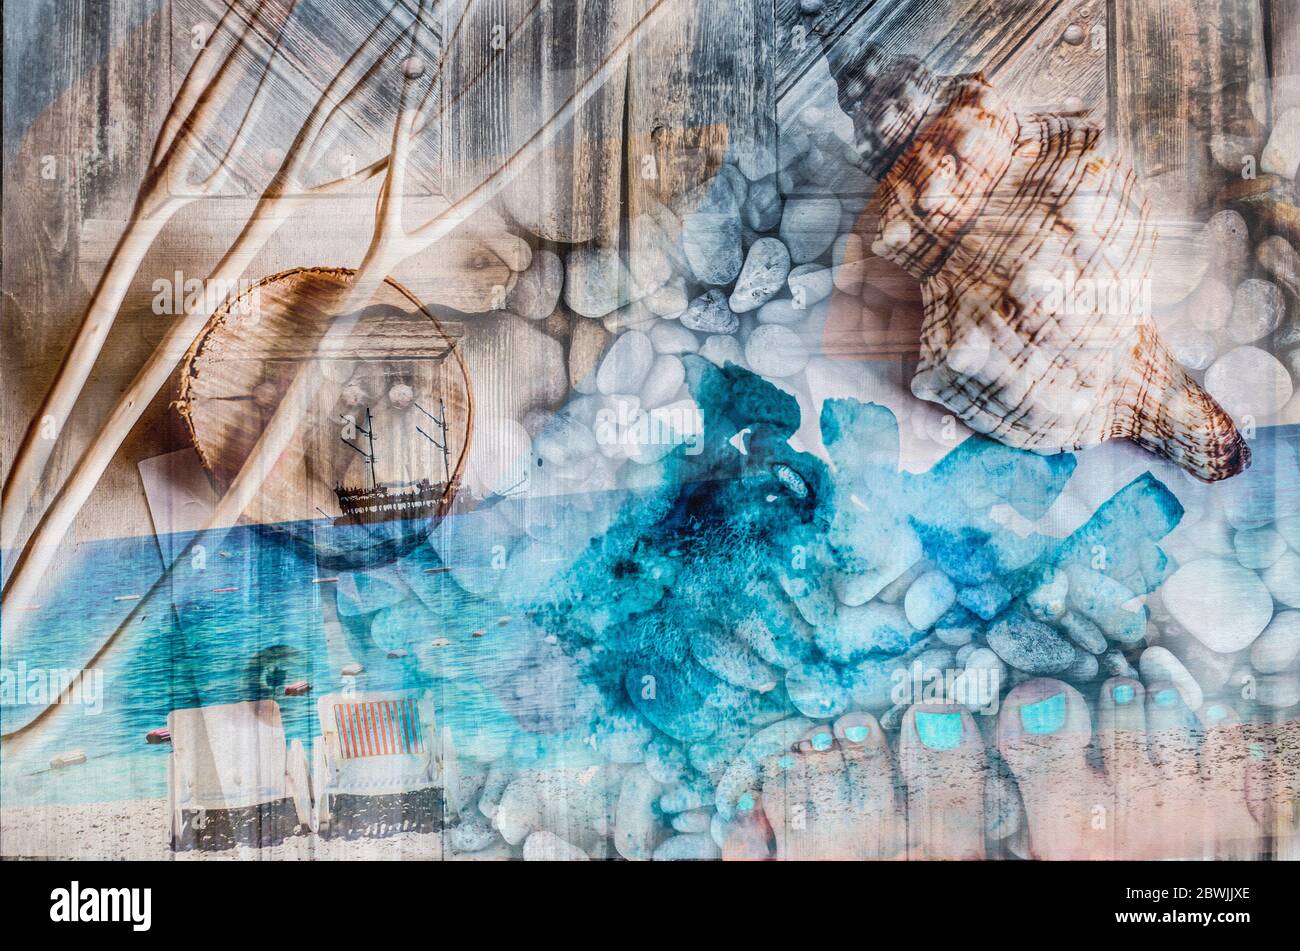 Collage de mer avec coquillages, bateau, pierres, pieds et eau. Été détente photo d'art textural. Banque D'Images